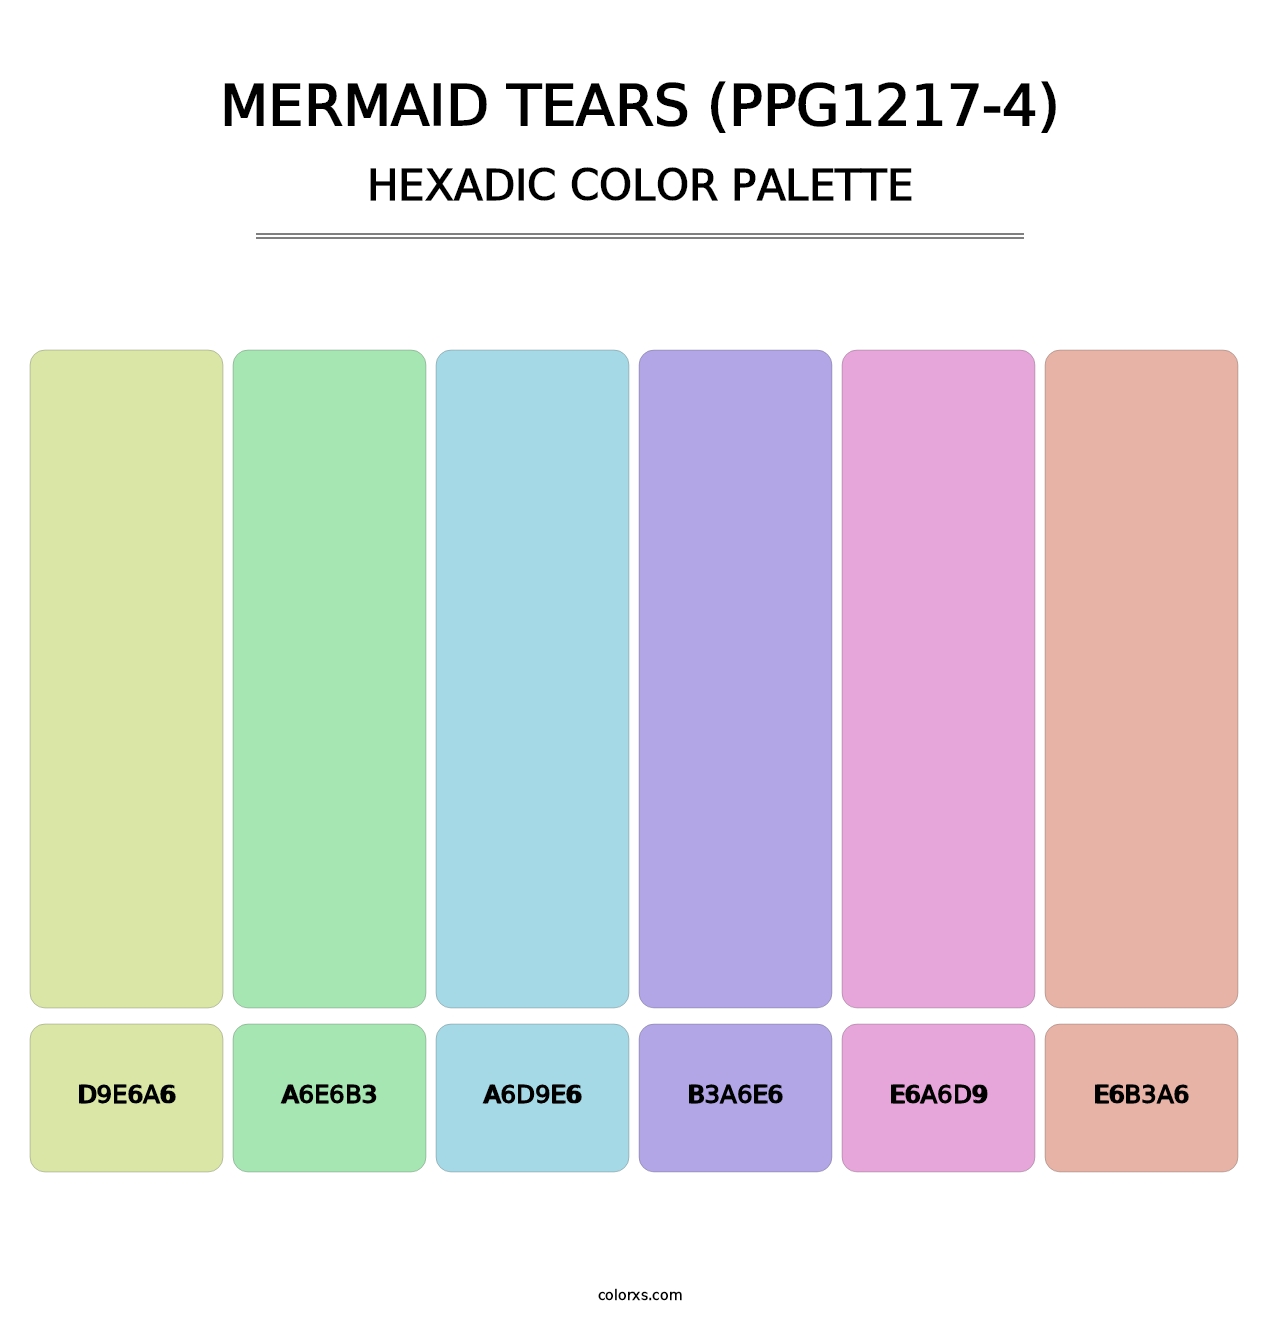 Mermaid Tears (PPG1217-4) - Hexadic Color Palette